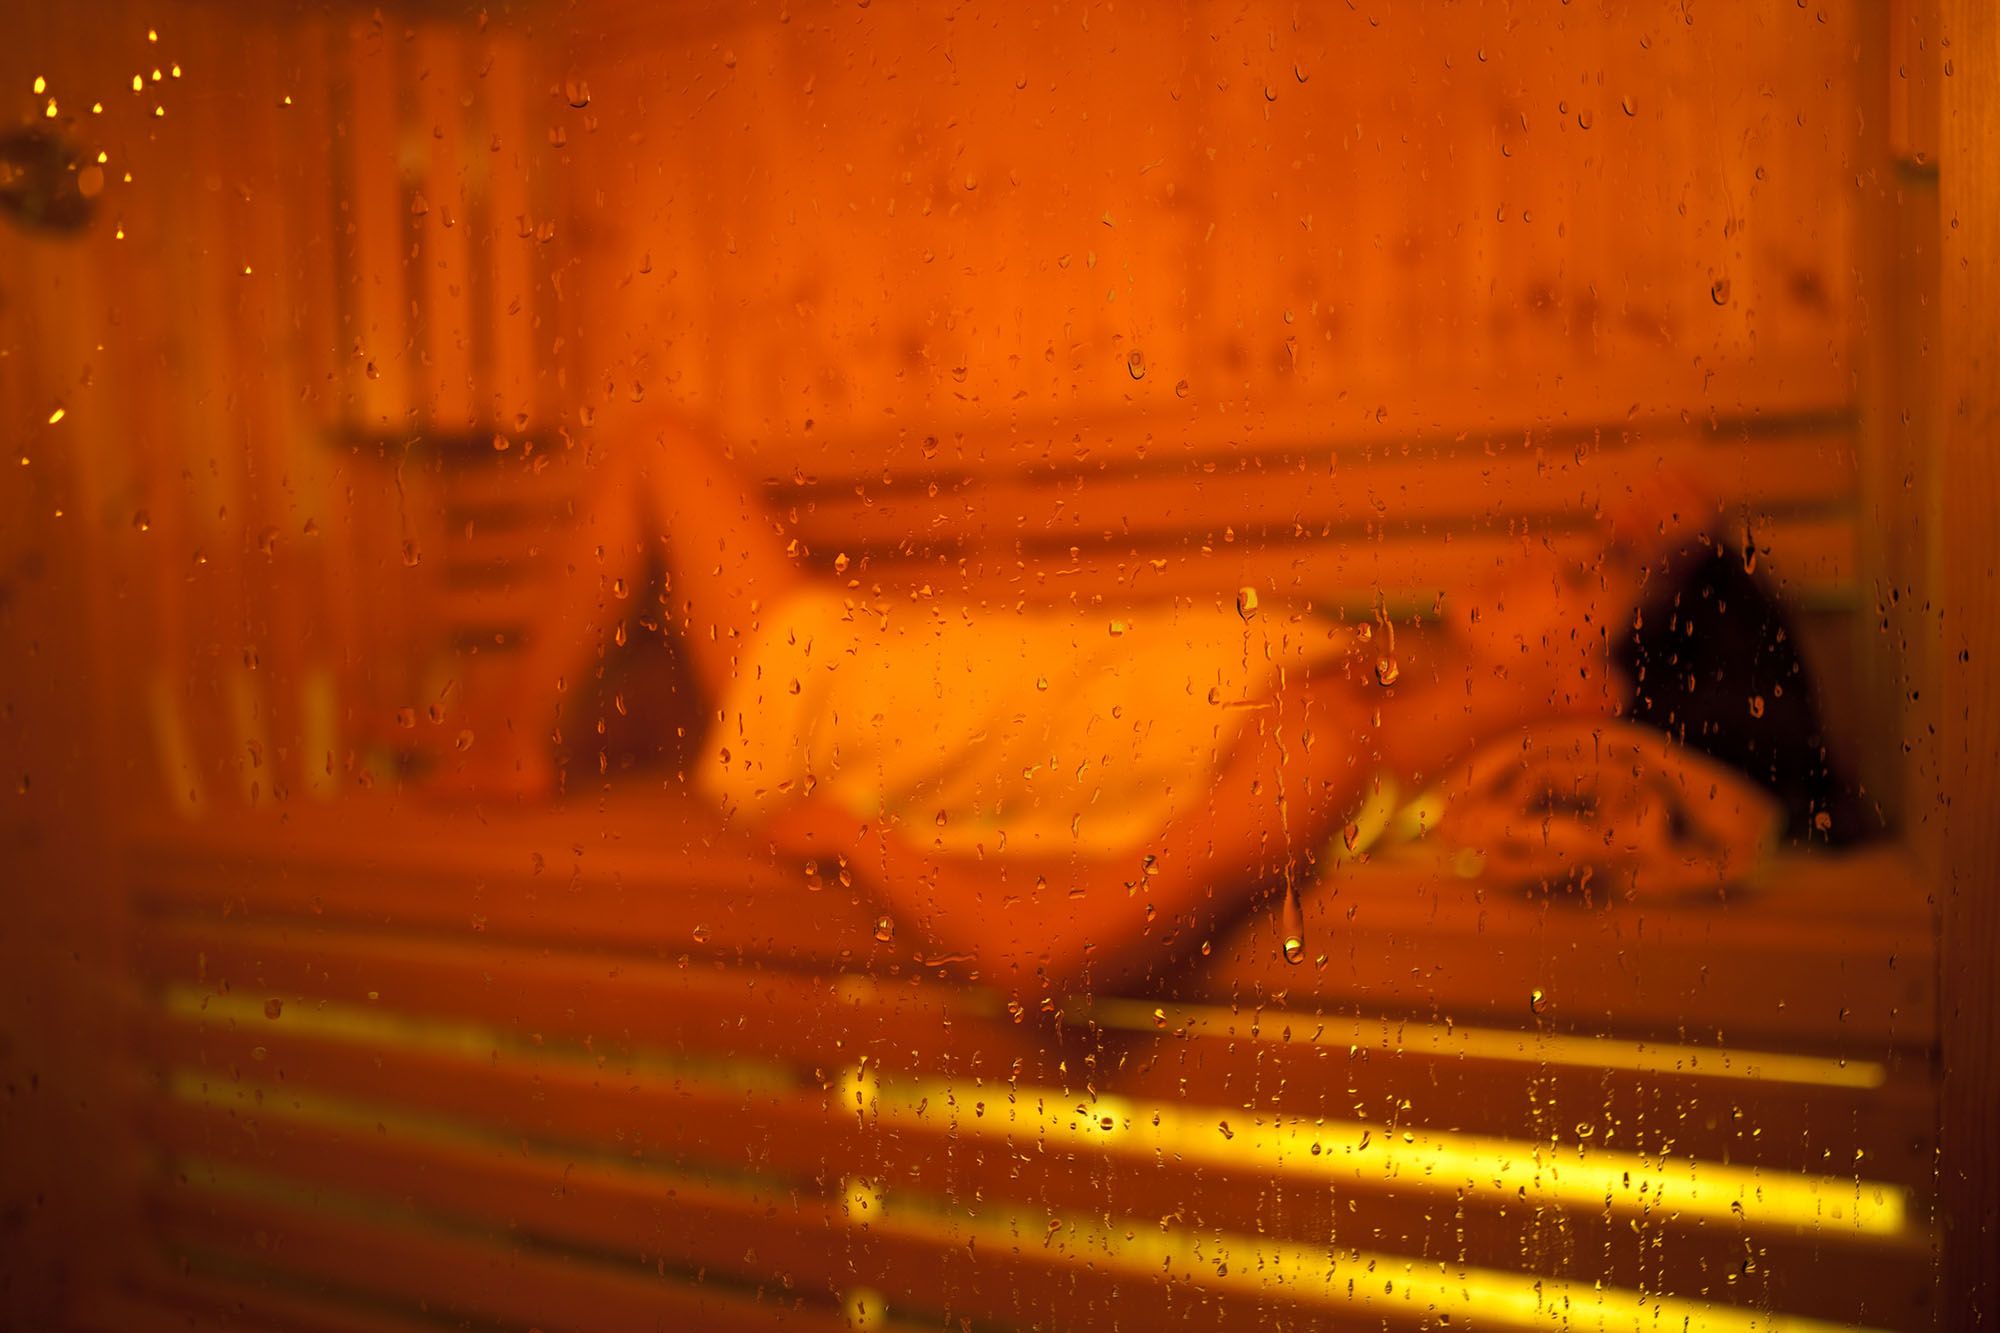 Frau liegt in der Sauna